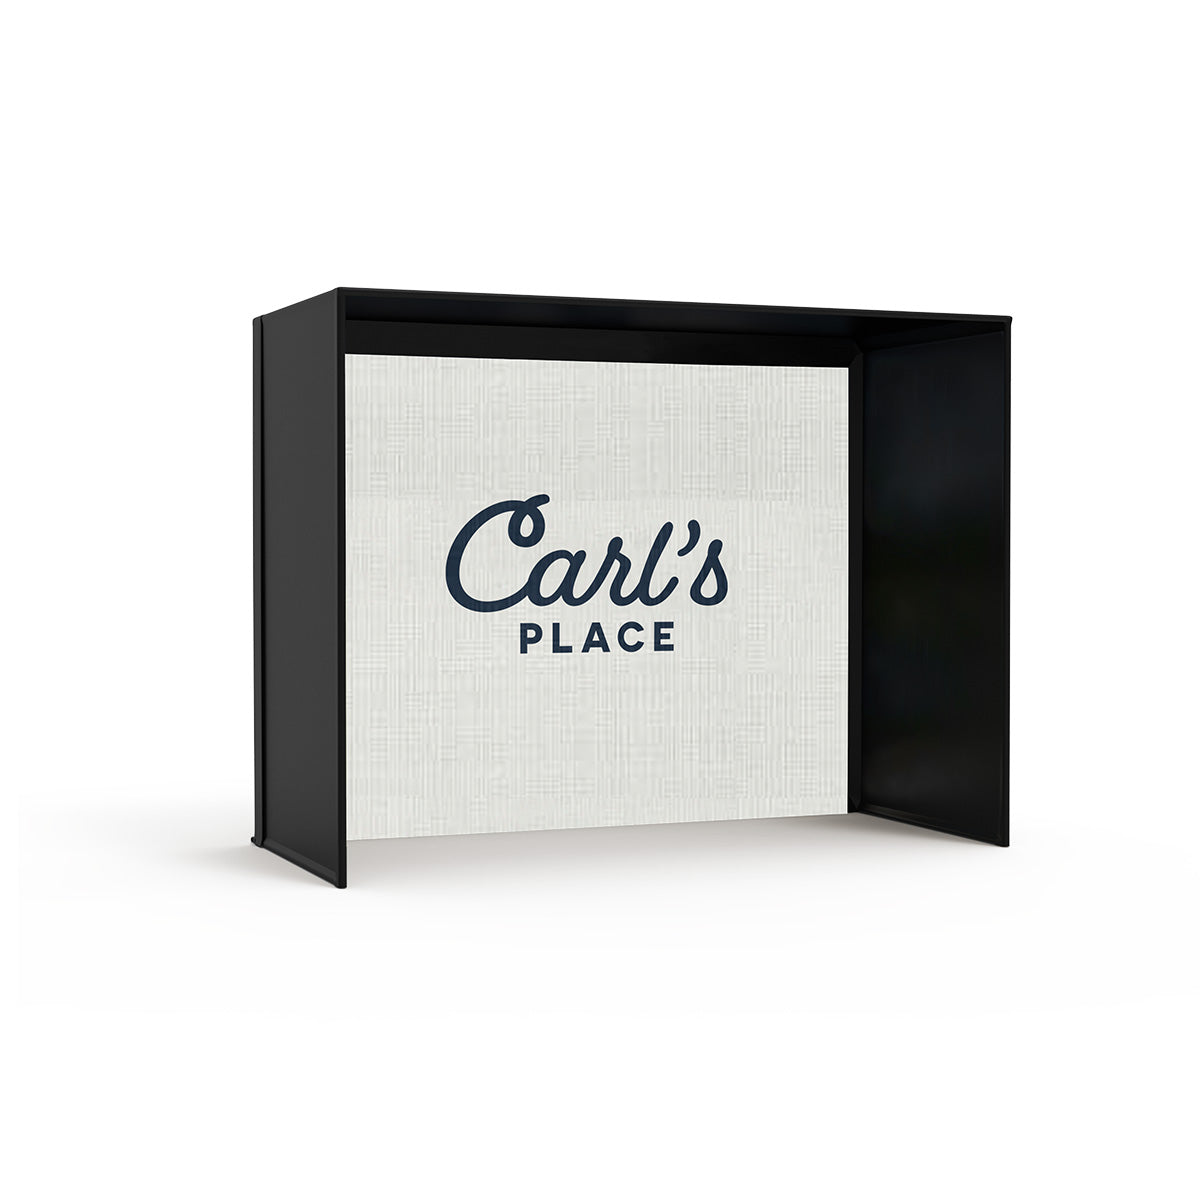 Carl’s Place C-Series DIY Simulator Enclosure Kit with Impact Screen